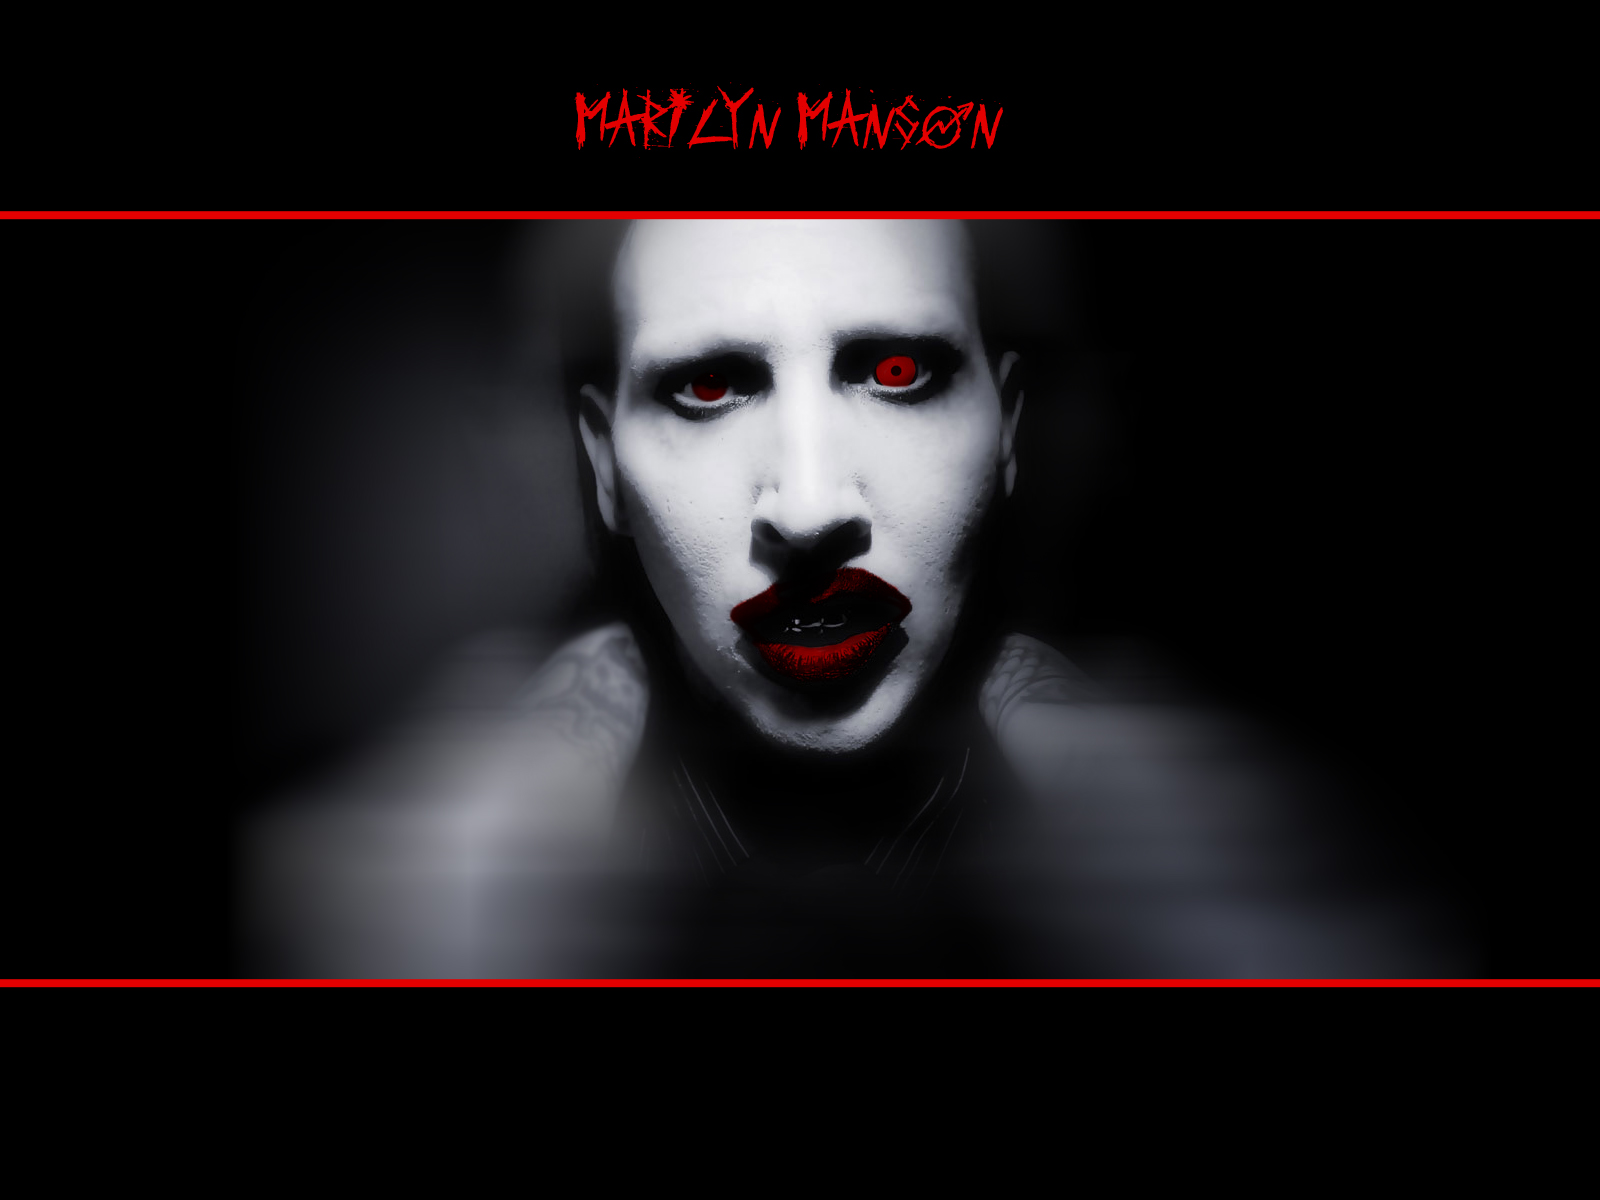 Marilyn Manson Industrial Metal Heavy Metal 1600x1200